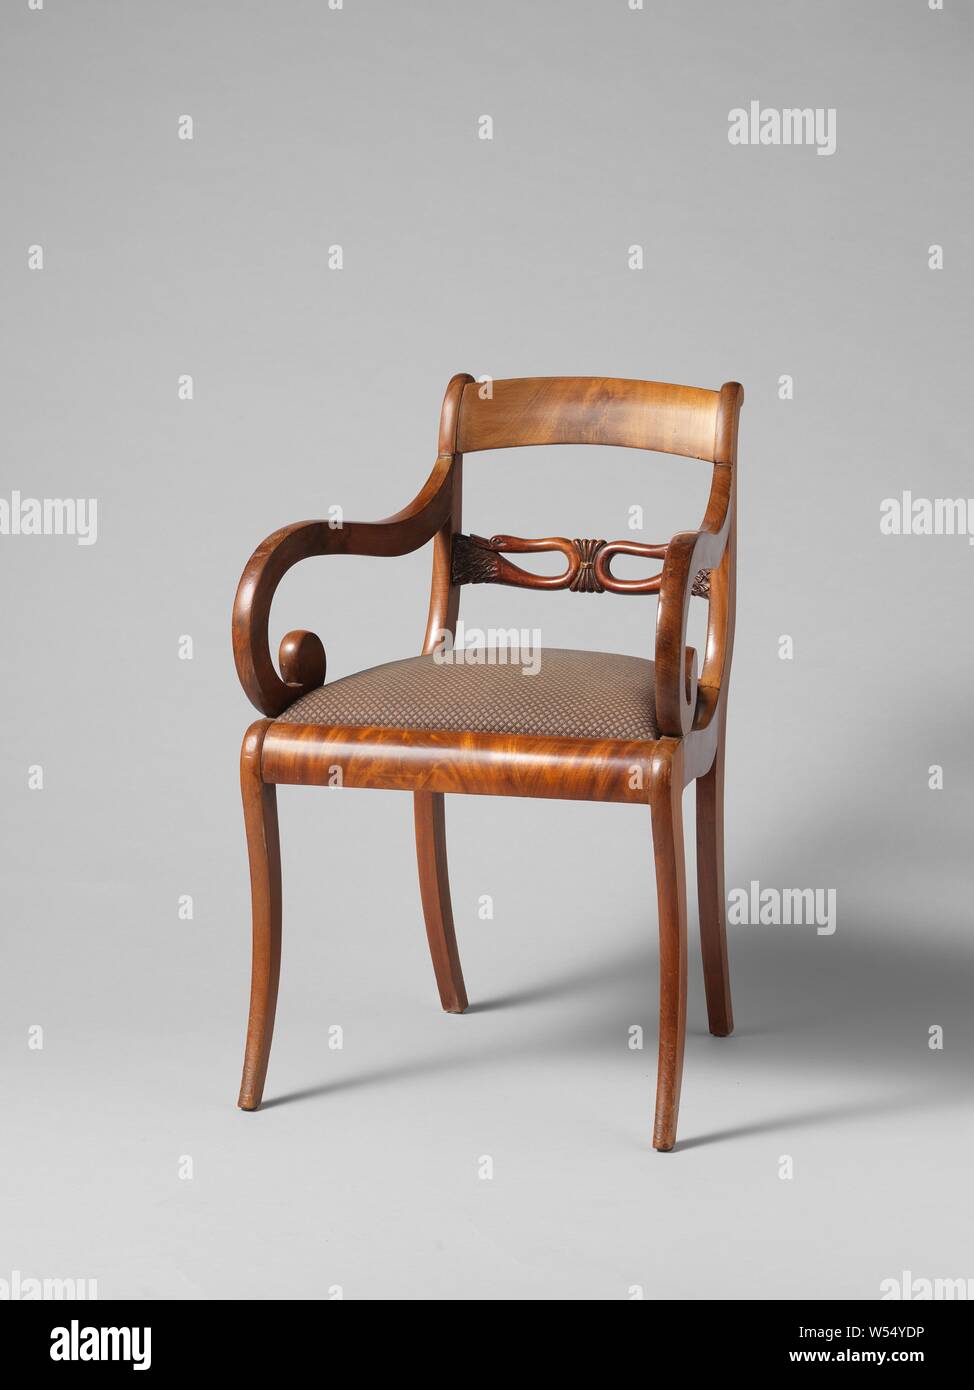 Set de 4 pieds en bois chaise canapé setee jambe acajou avec roulettes en laiton antique